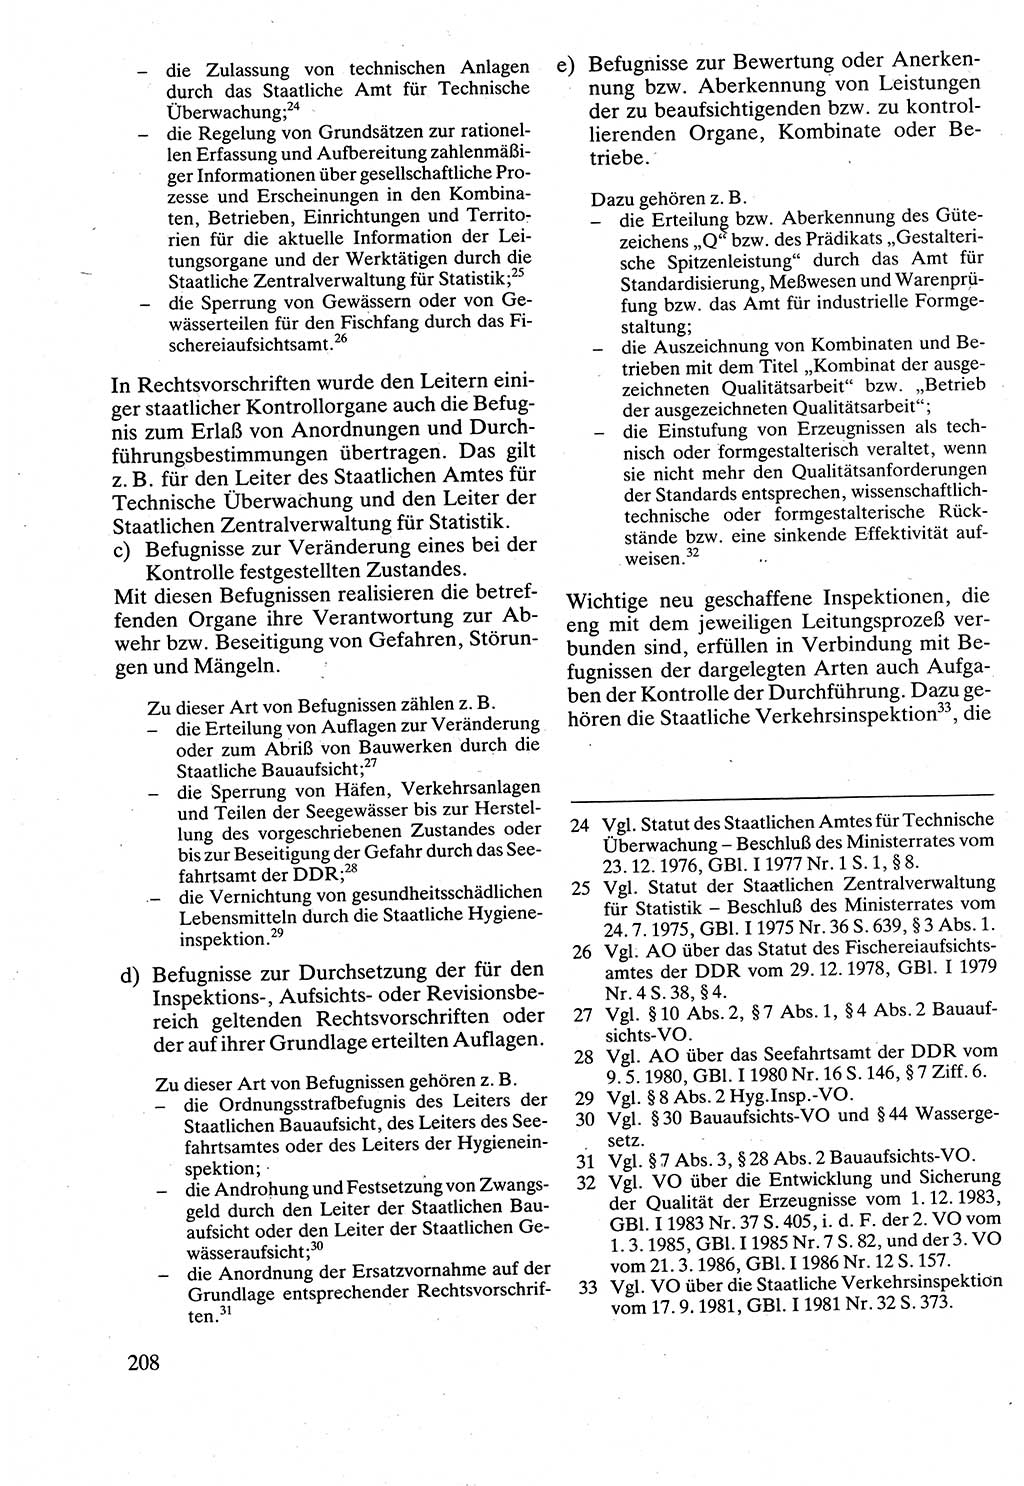 Verwaltungsrecht [Deutsche Demokratische Republik (DDR)], Lehrbuch 1988, Seite 208 (Verw.-R. DDR Lb. 1988, S. 208)